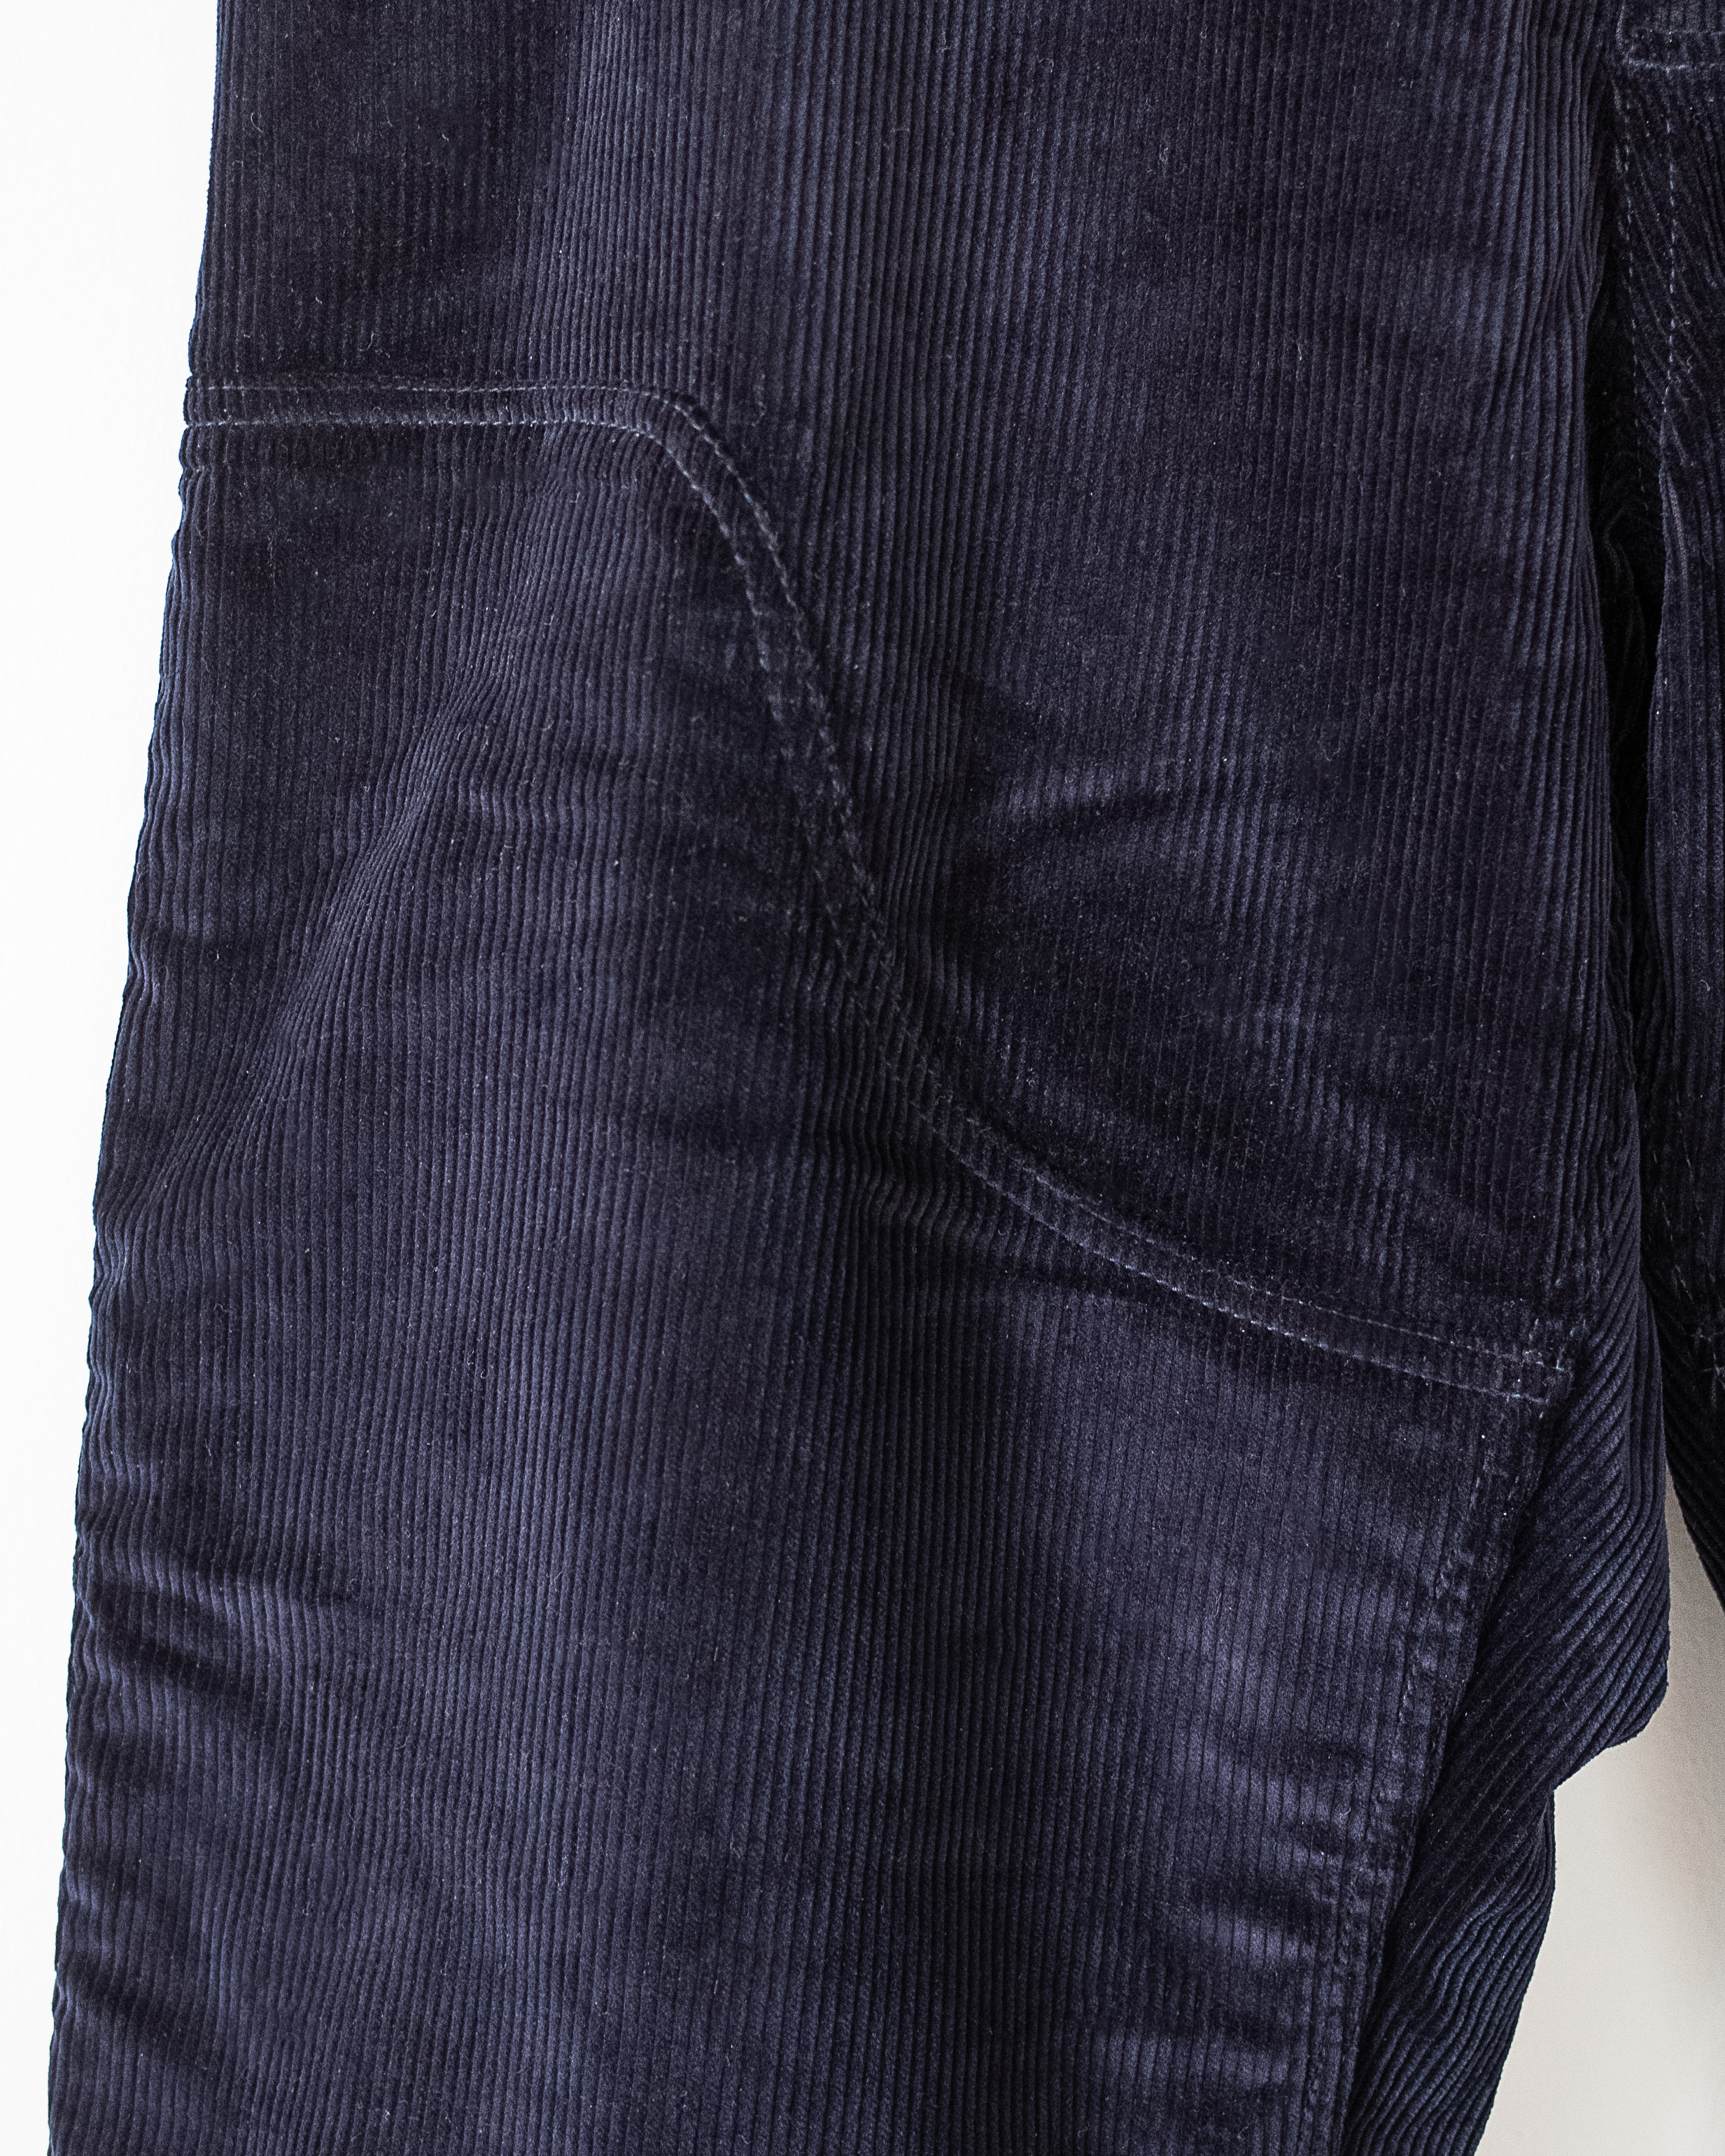 開店記念セール James Coward Navy Trousers With Corduroy ワークパンツ カーゴパンツ Acossolutions Es